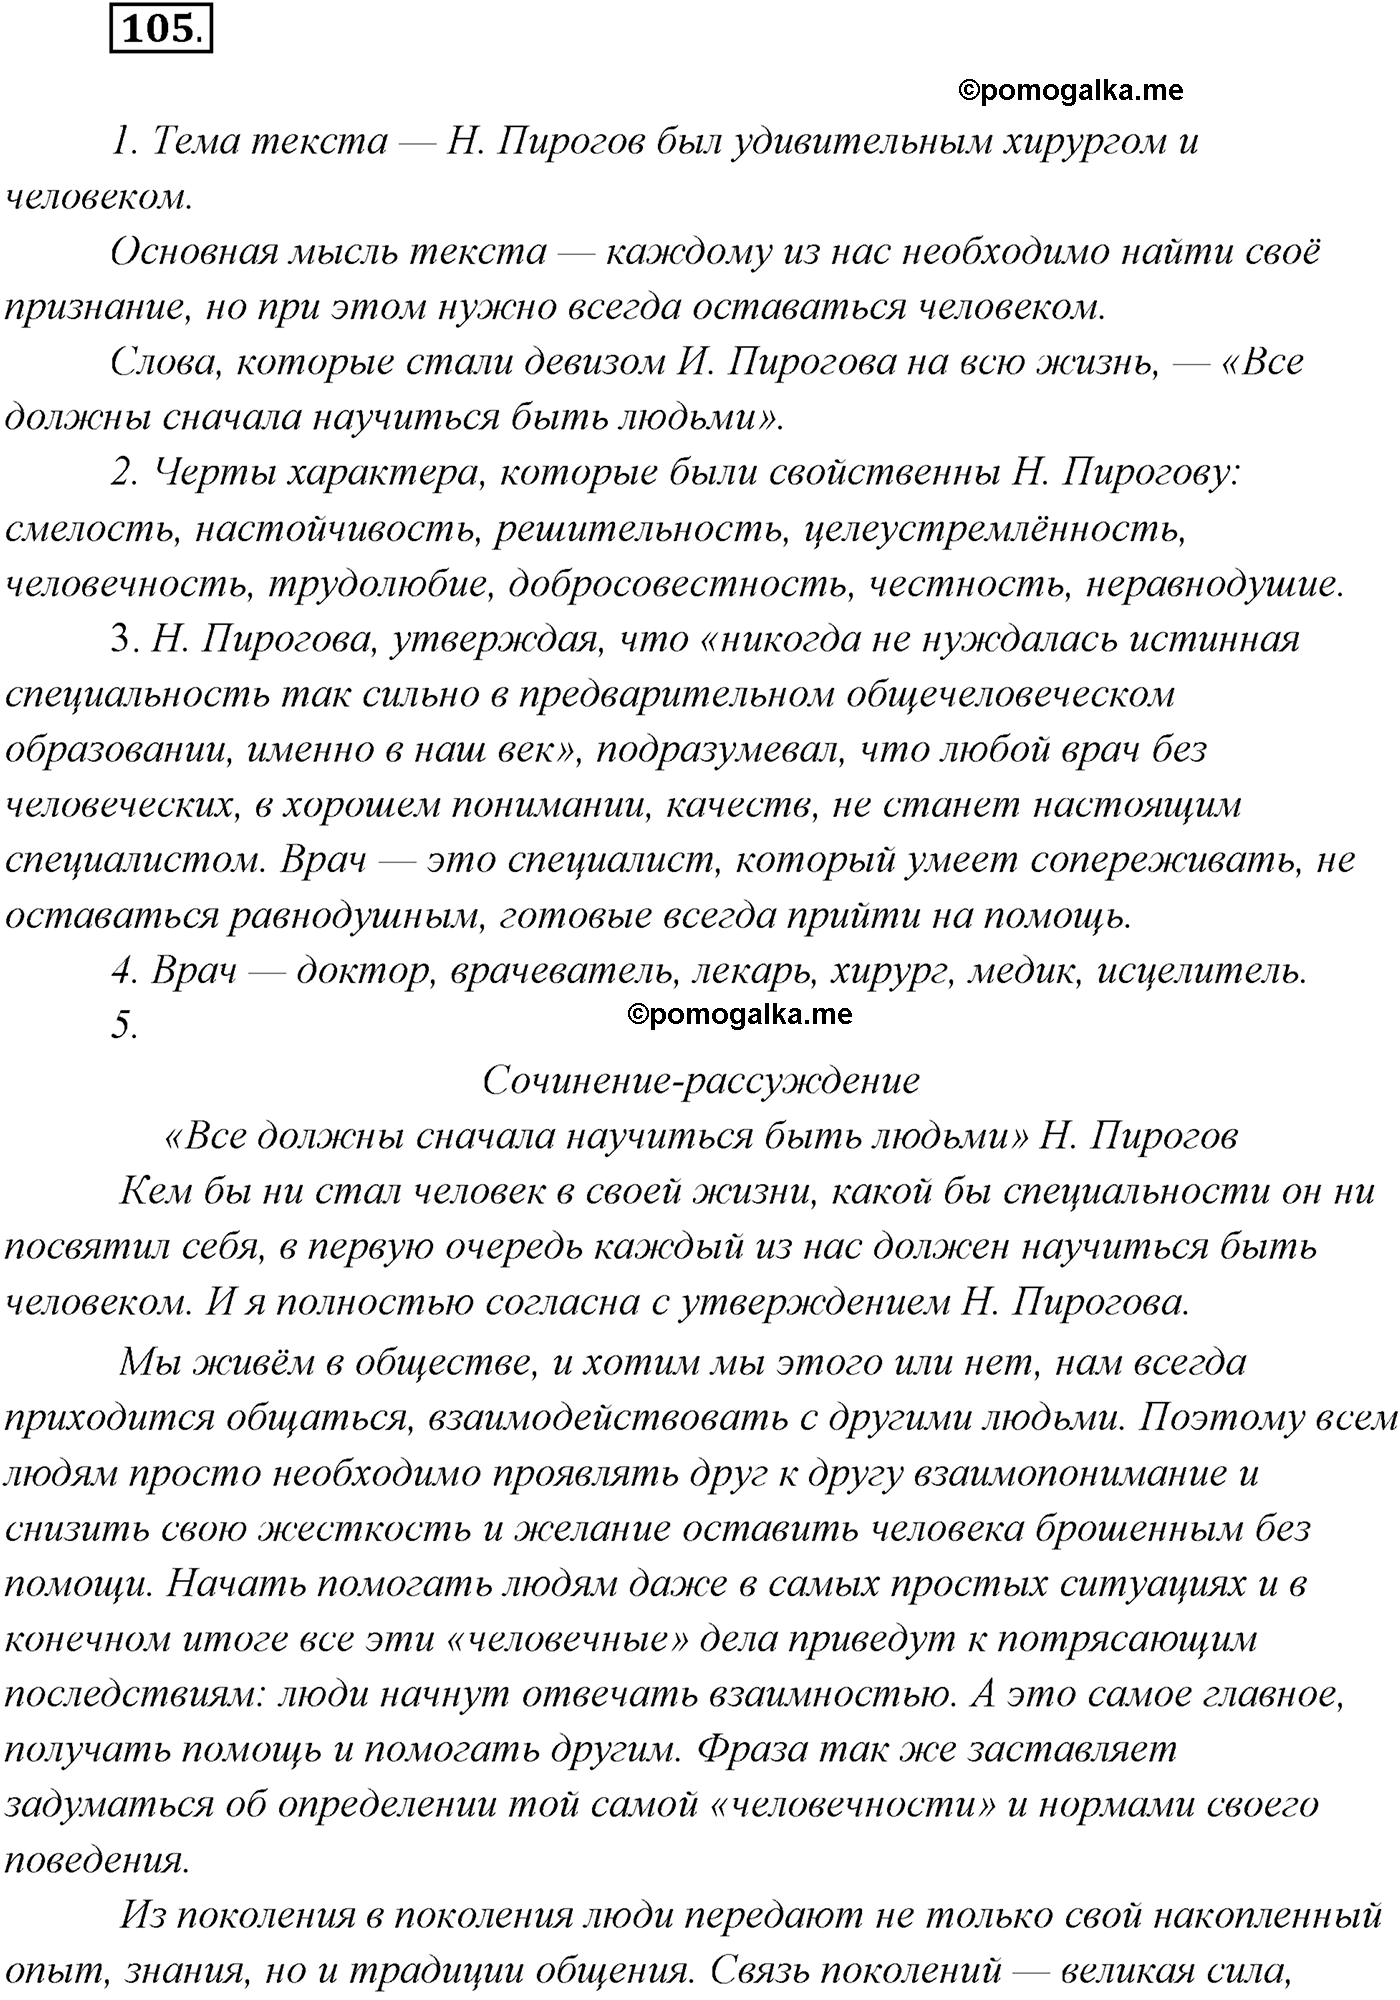 упражнение №105 русский язык 9 класс Рыбченкова, Александрова